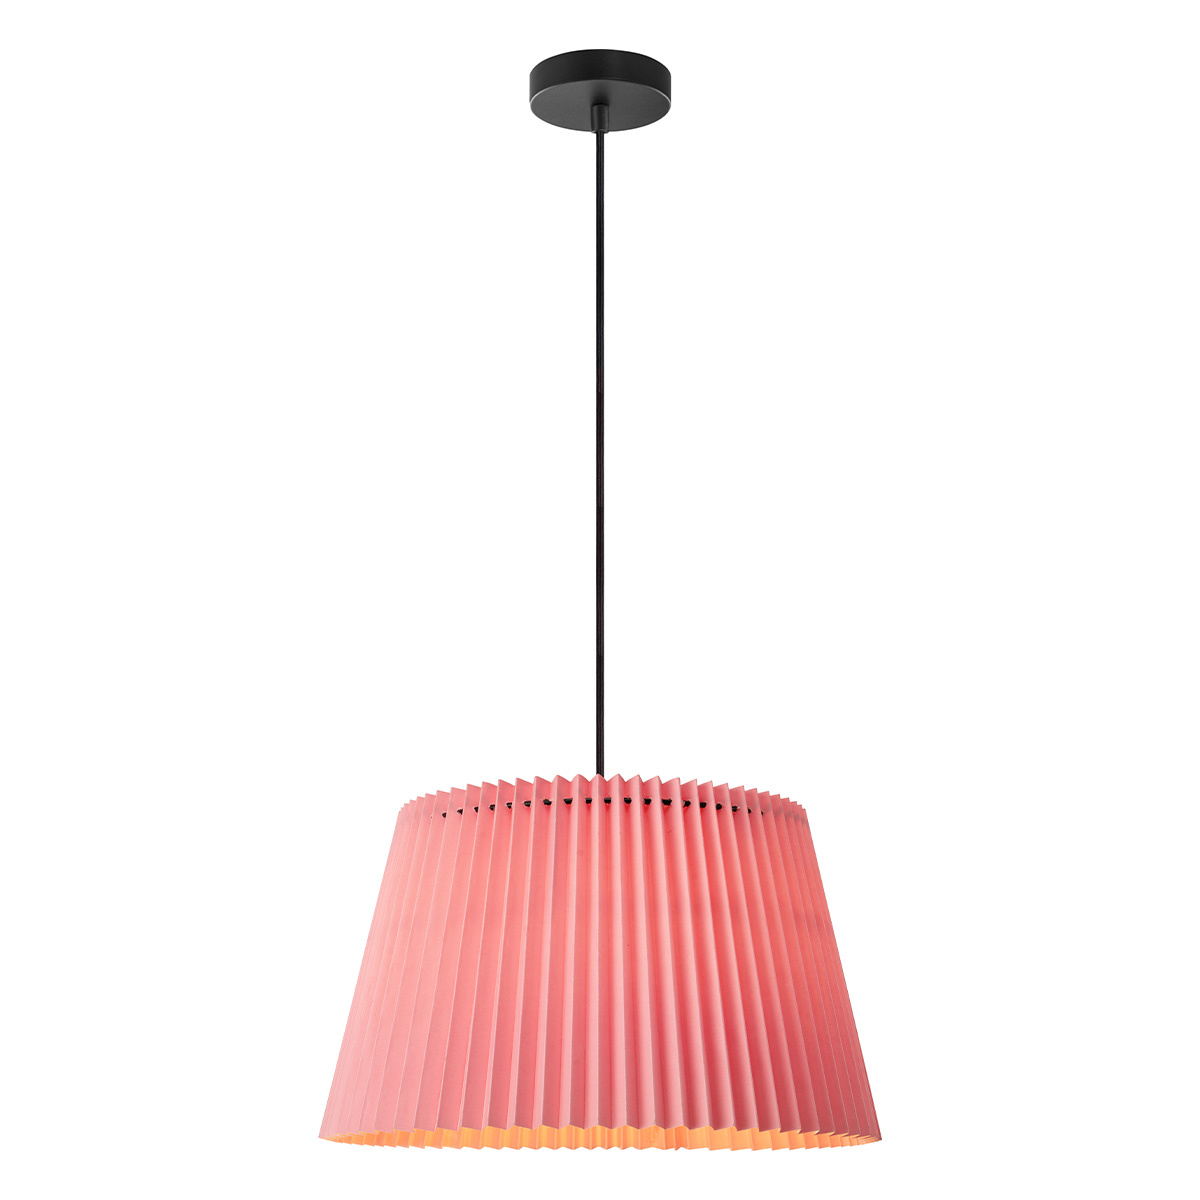 Tangla lighting - TLP7457-01PK - LED Pendant lamp 1 Light - metal + paper - pink - pleat - E27